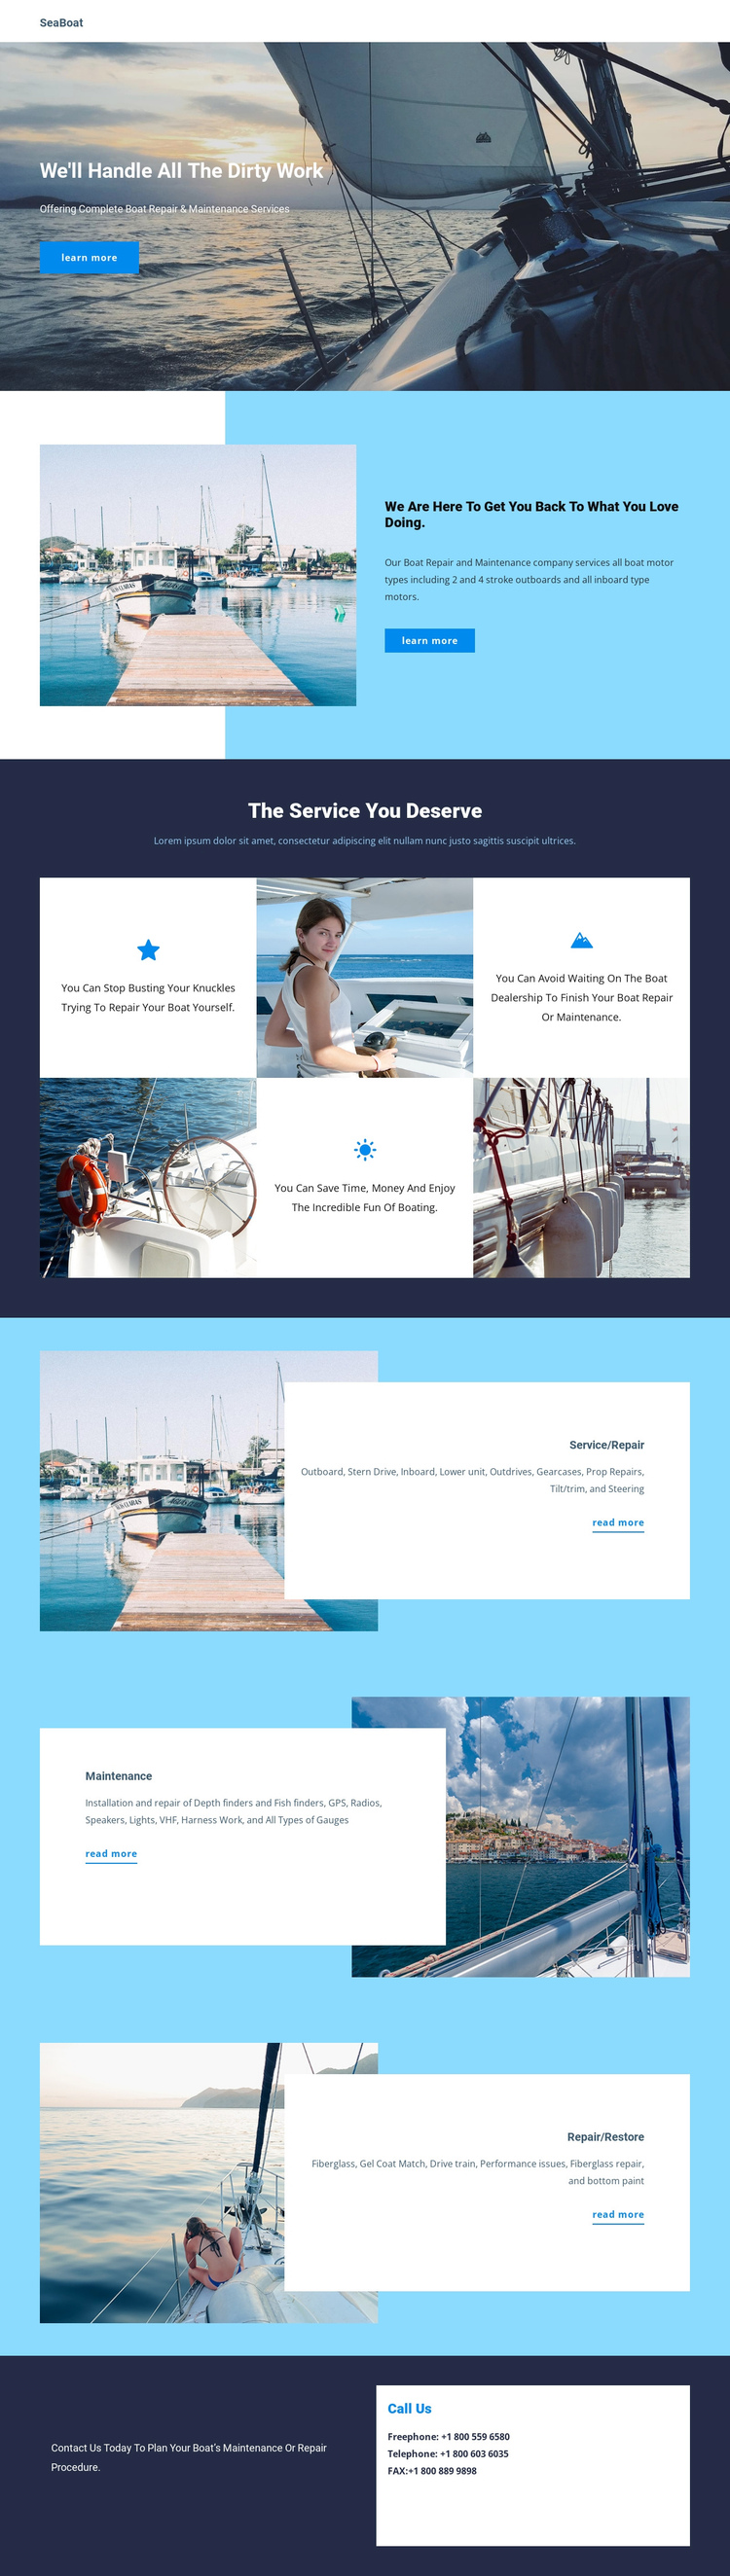 Travel on Seaboat Website Builder Software